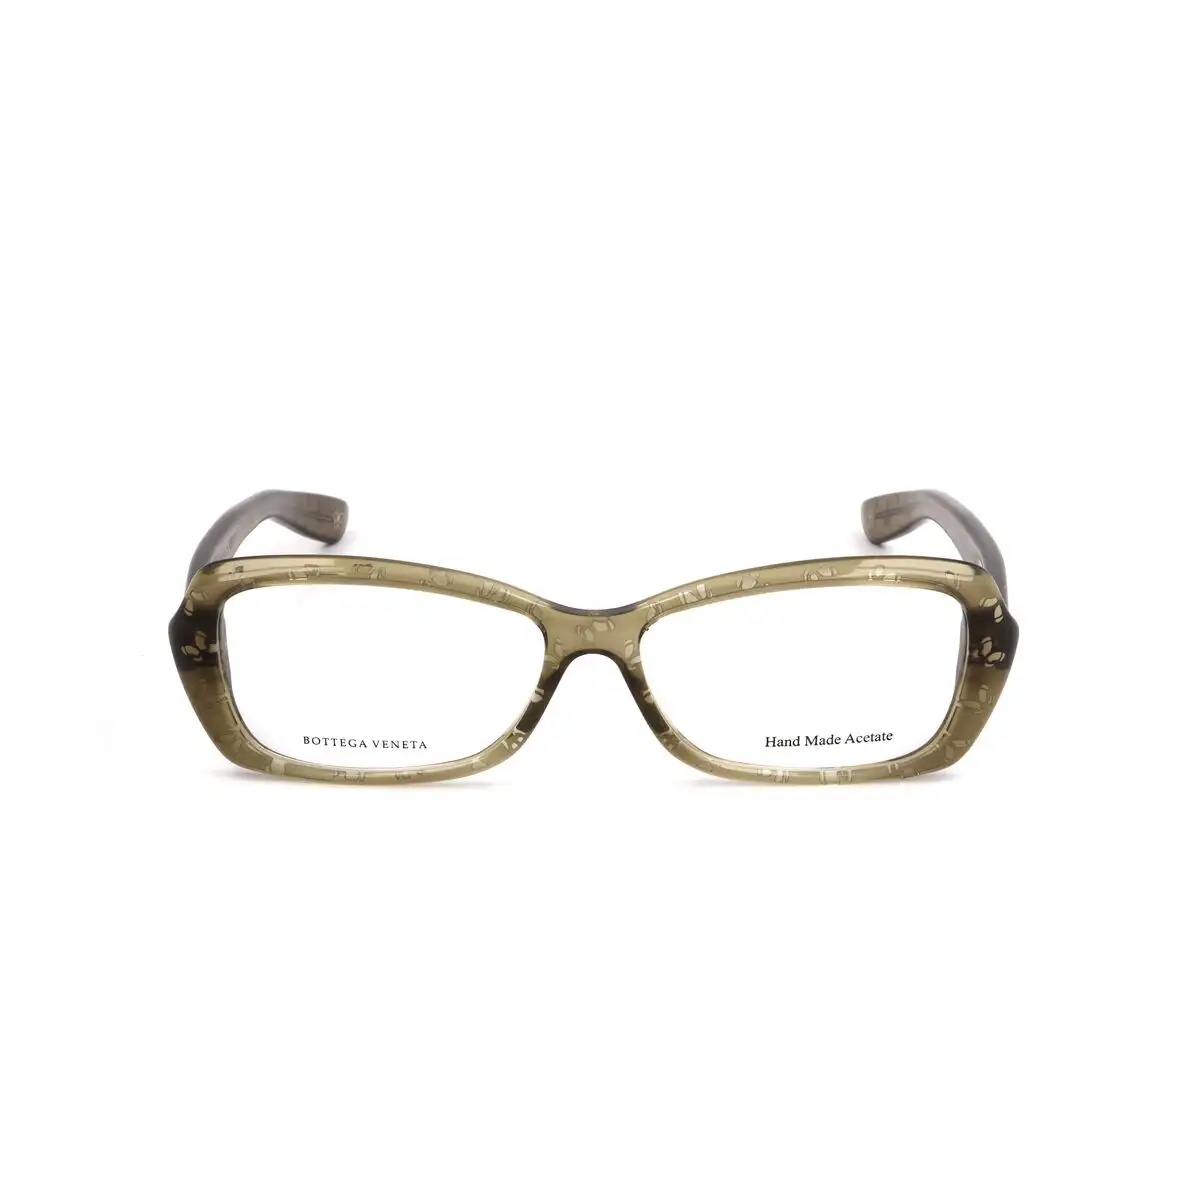 Monture de lunettes femme bottega veneta bv 170 0o4 vert_8956. DIAYTAR SENEGAL - Où Choisir est un Plaisir. Explorez notre boutique en ligne et choisissez parmi des produits de qualité qui satisferont vos besoins et vos goûts.